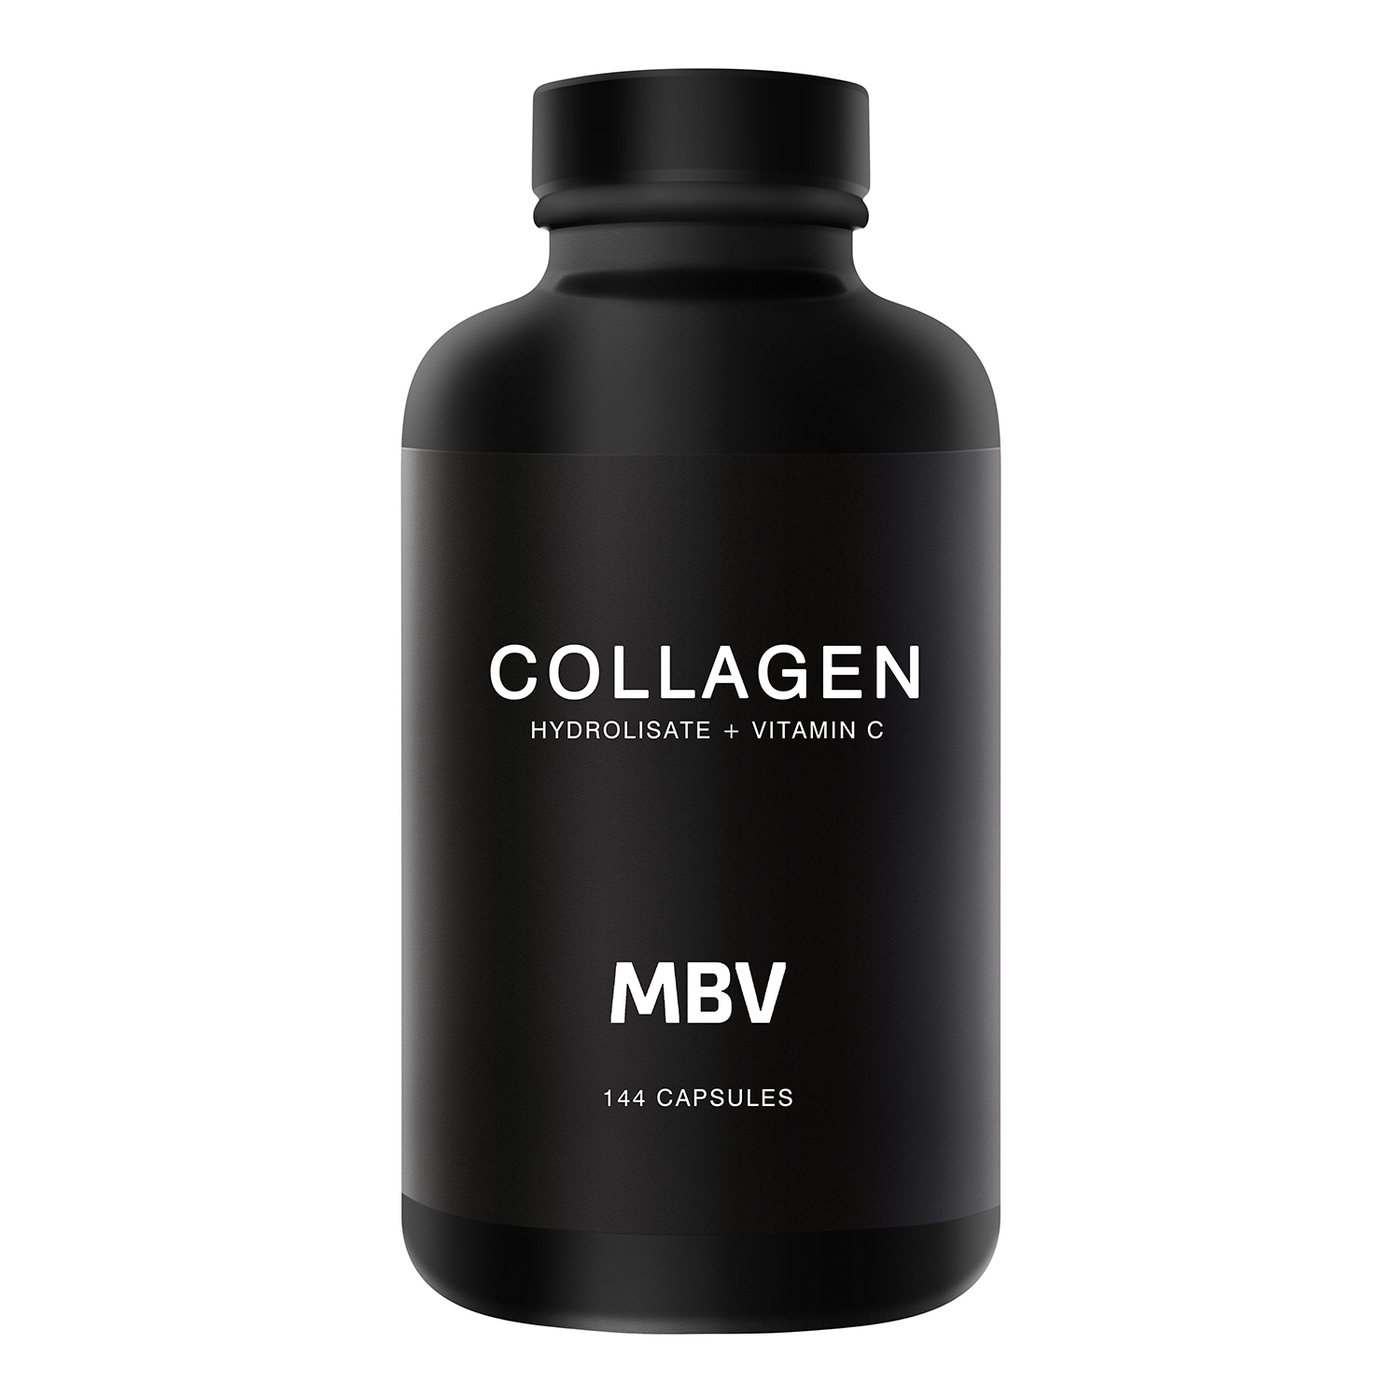 Collagen c отзывы